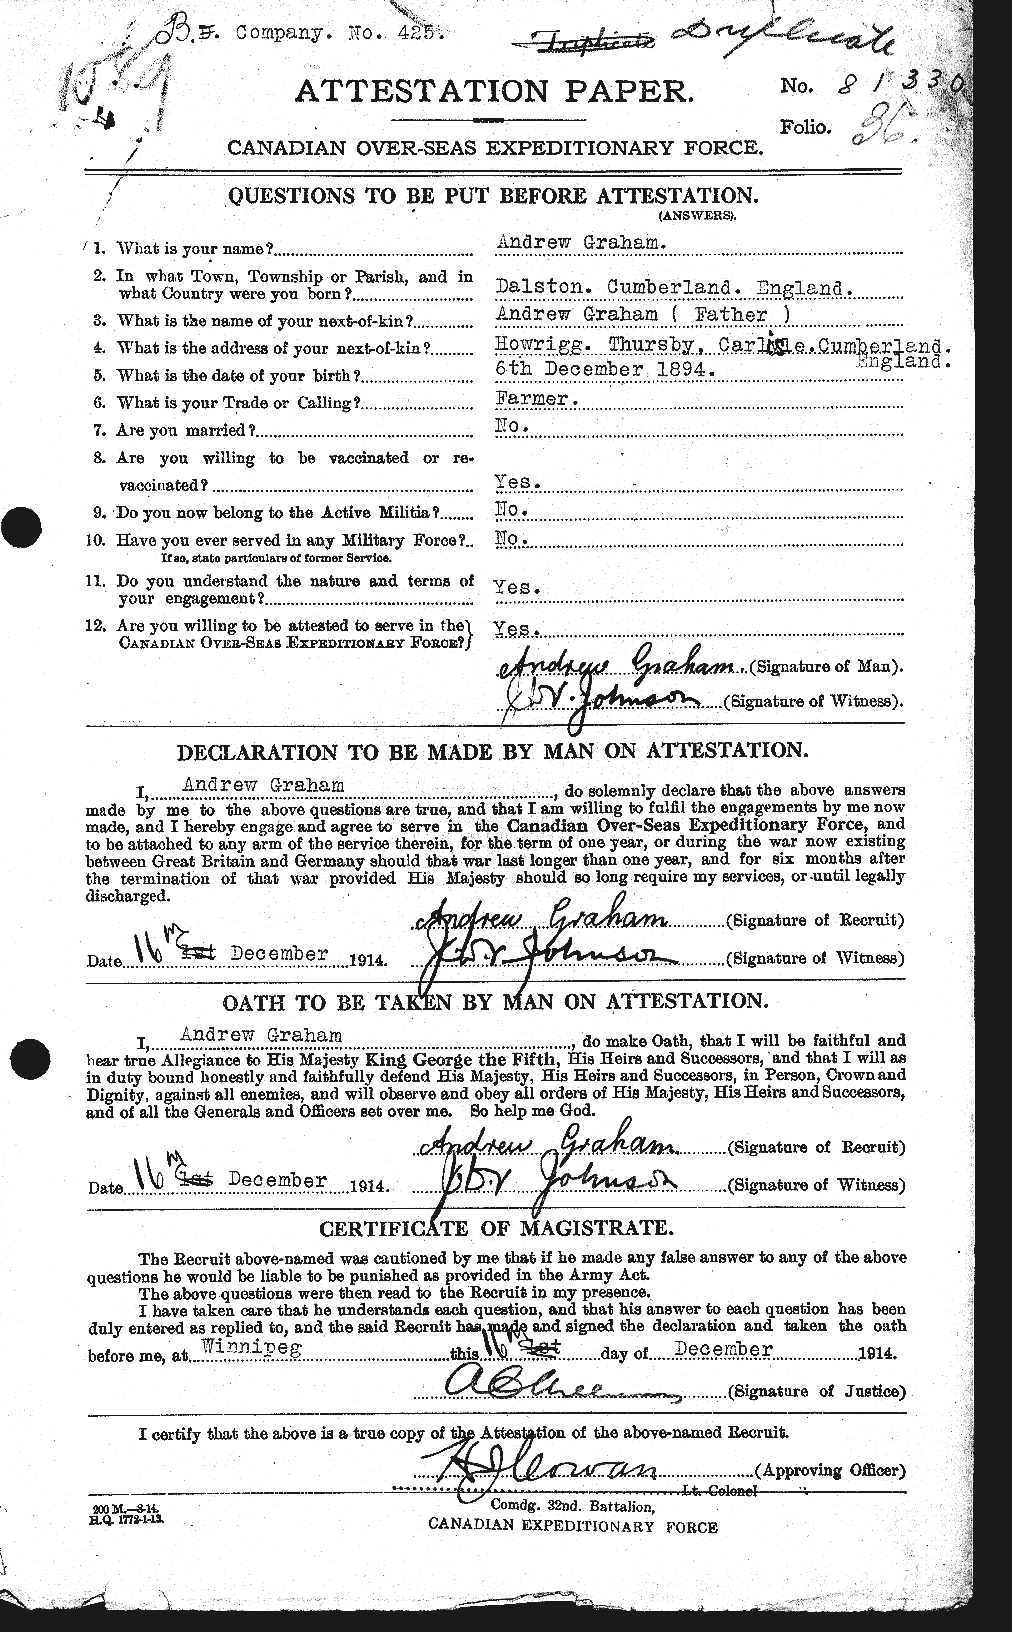 Dossiers du Personnel de la Première Guerre mondiale - CEC 359611a